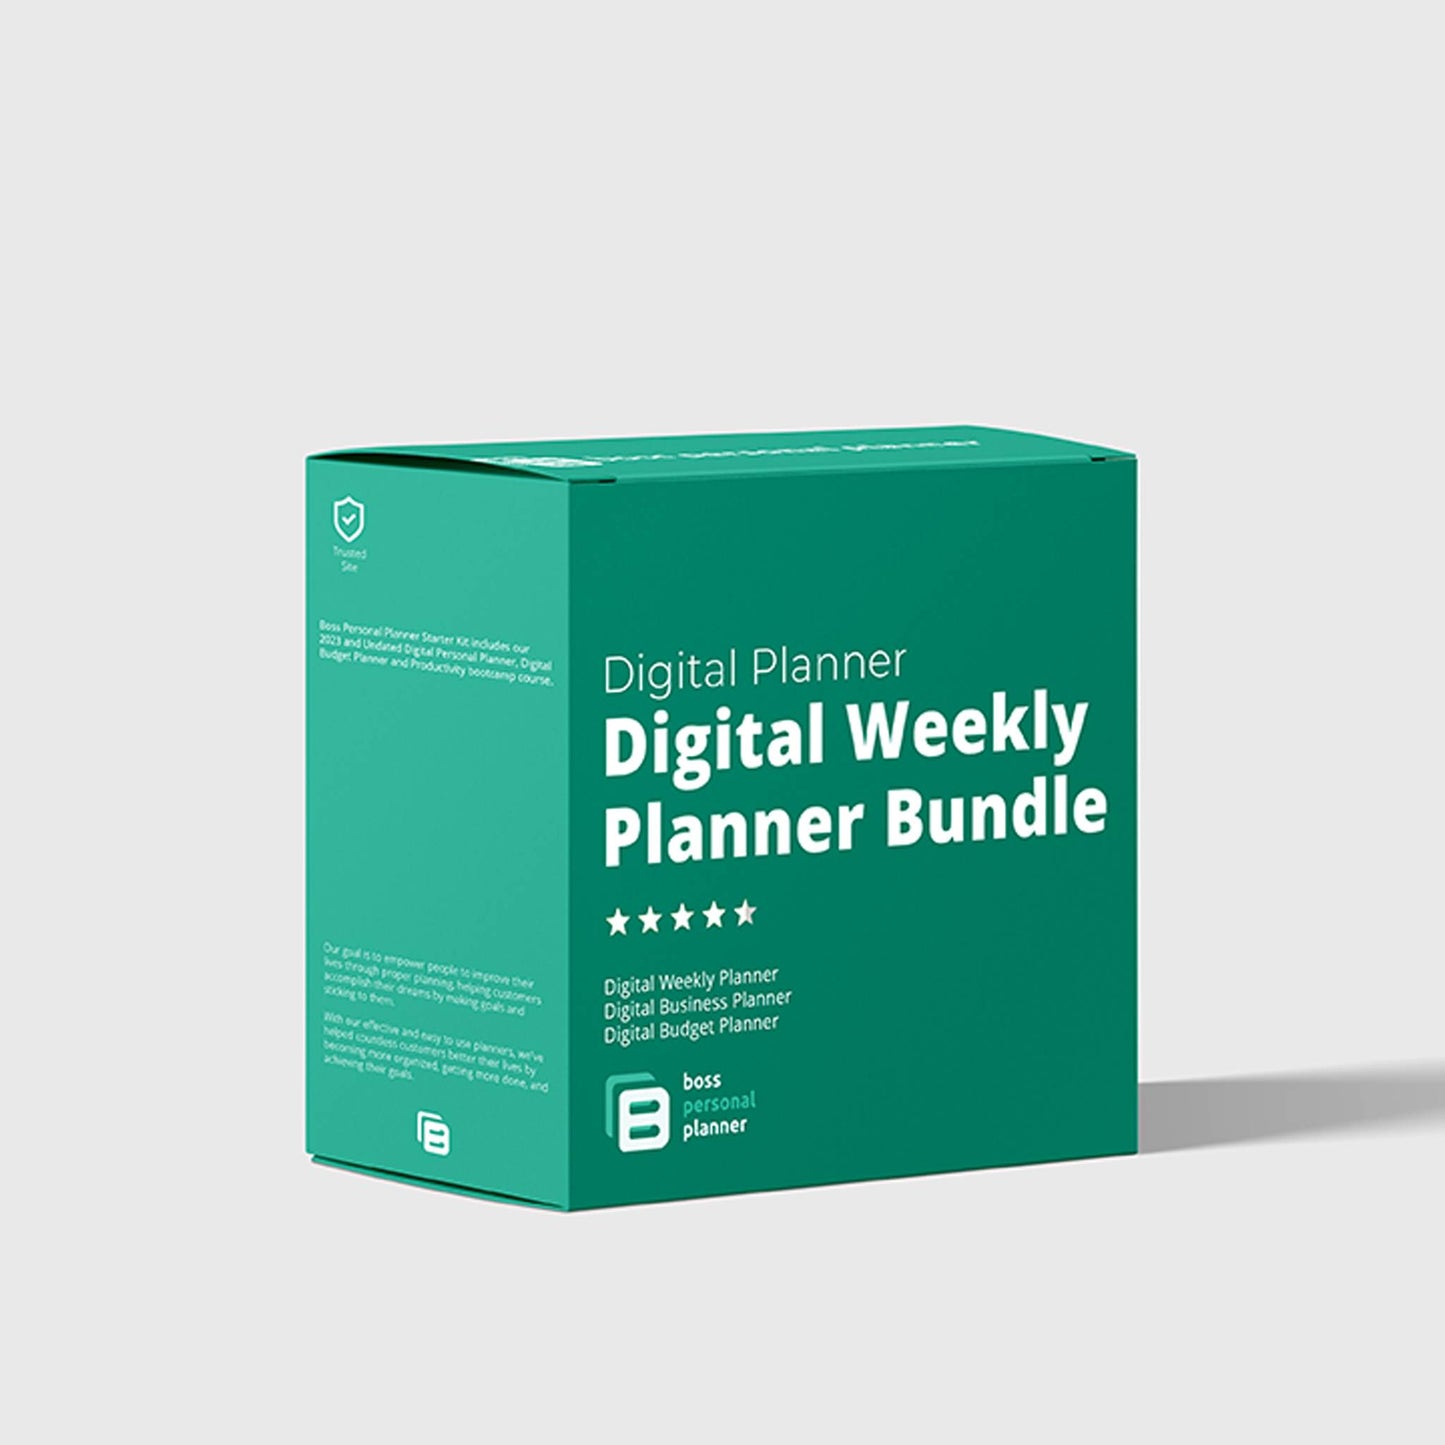 Digital Weekly Planner Bundle